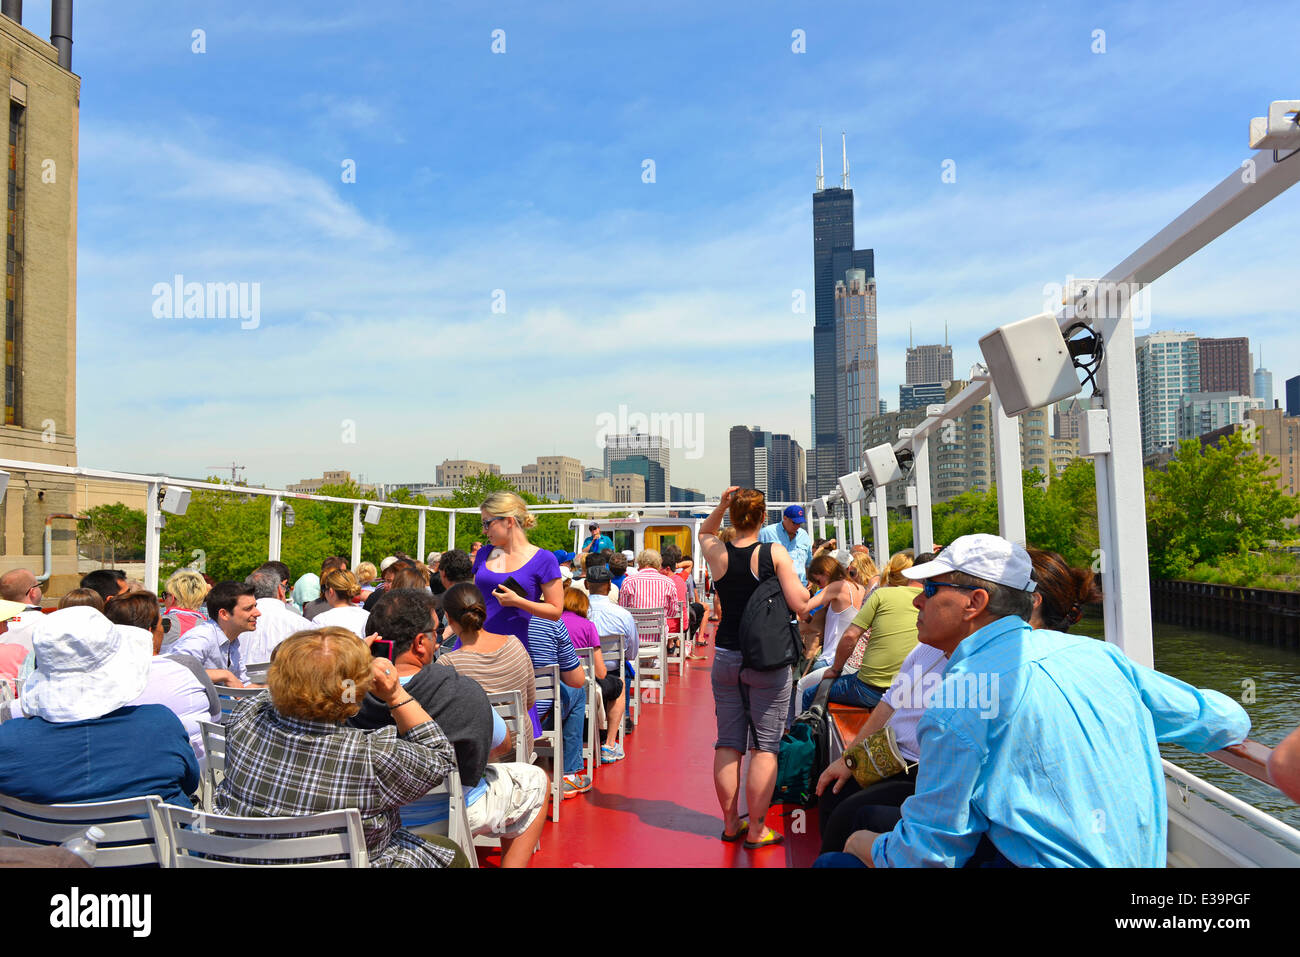 Crociera fluviale lungo il fiume Chicago, City Tour, turisti che si godono una narrato tour della città, giro turistico; Chicago, Illinois, Stati Uniti d'America Foto Stock